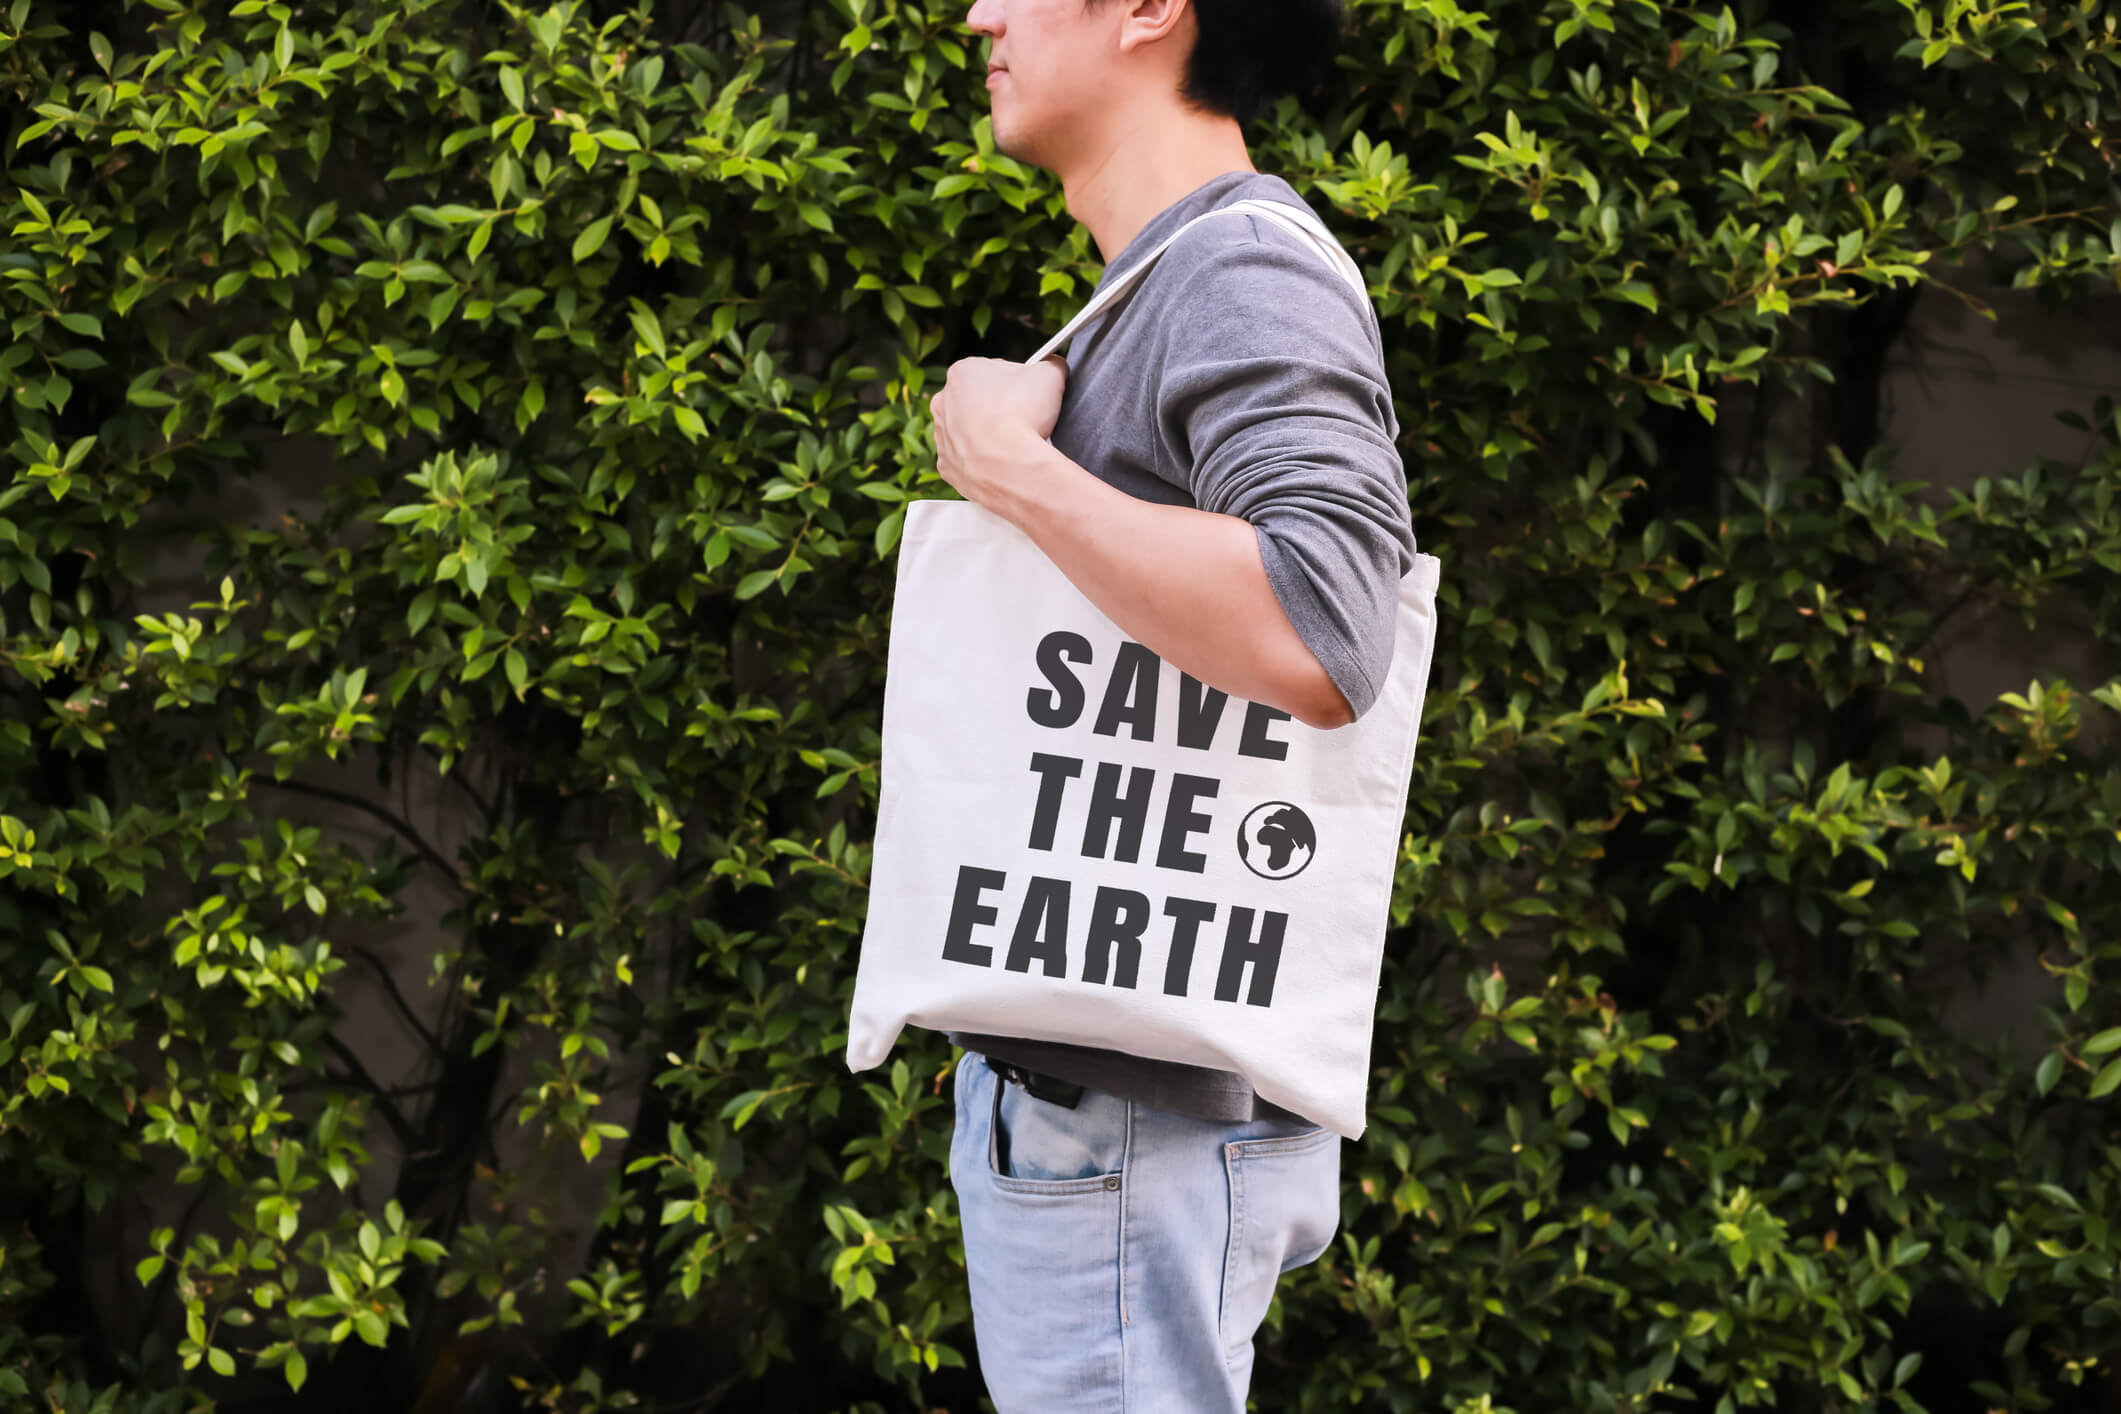 Falando em consumo consciente temos uma pessoa com uma ecobag com imagem de salve a terra.